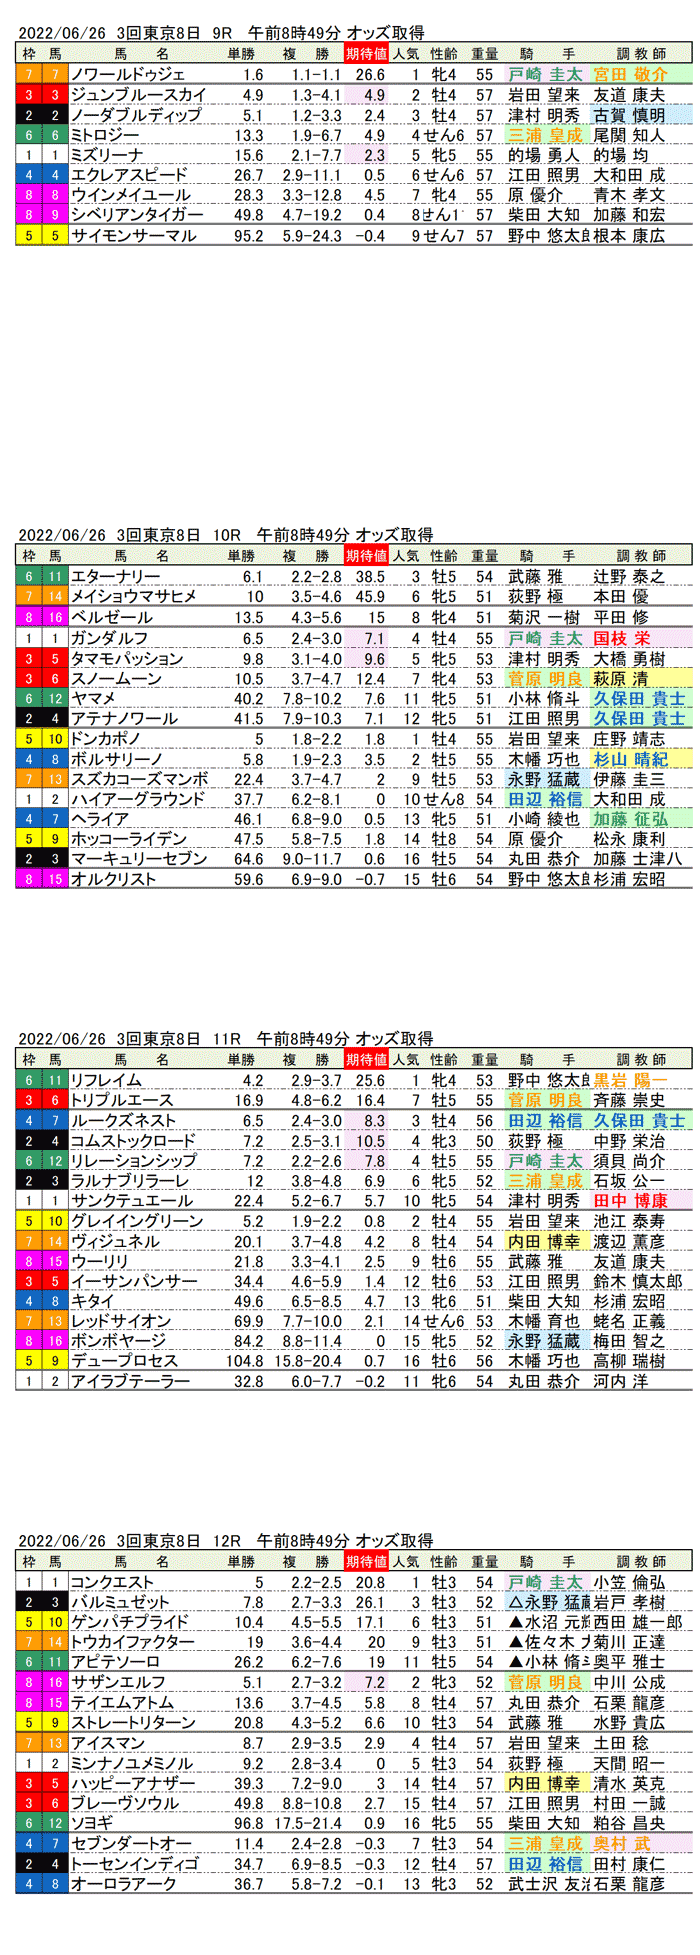 22年6月26日（日曜）期待値の公開 3回東京競馬8日目9R〜12R パラダイスステークス